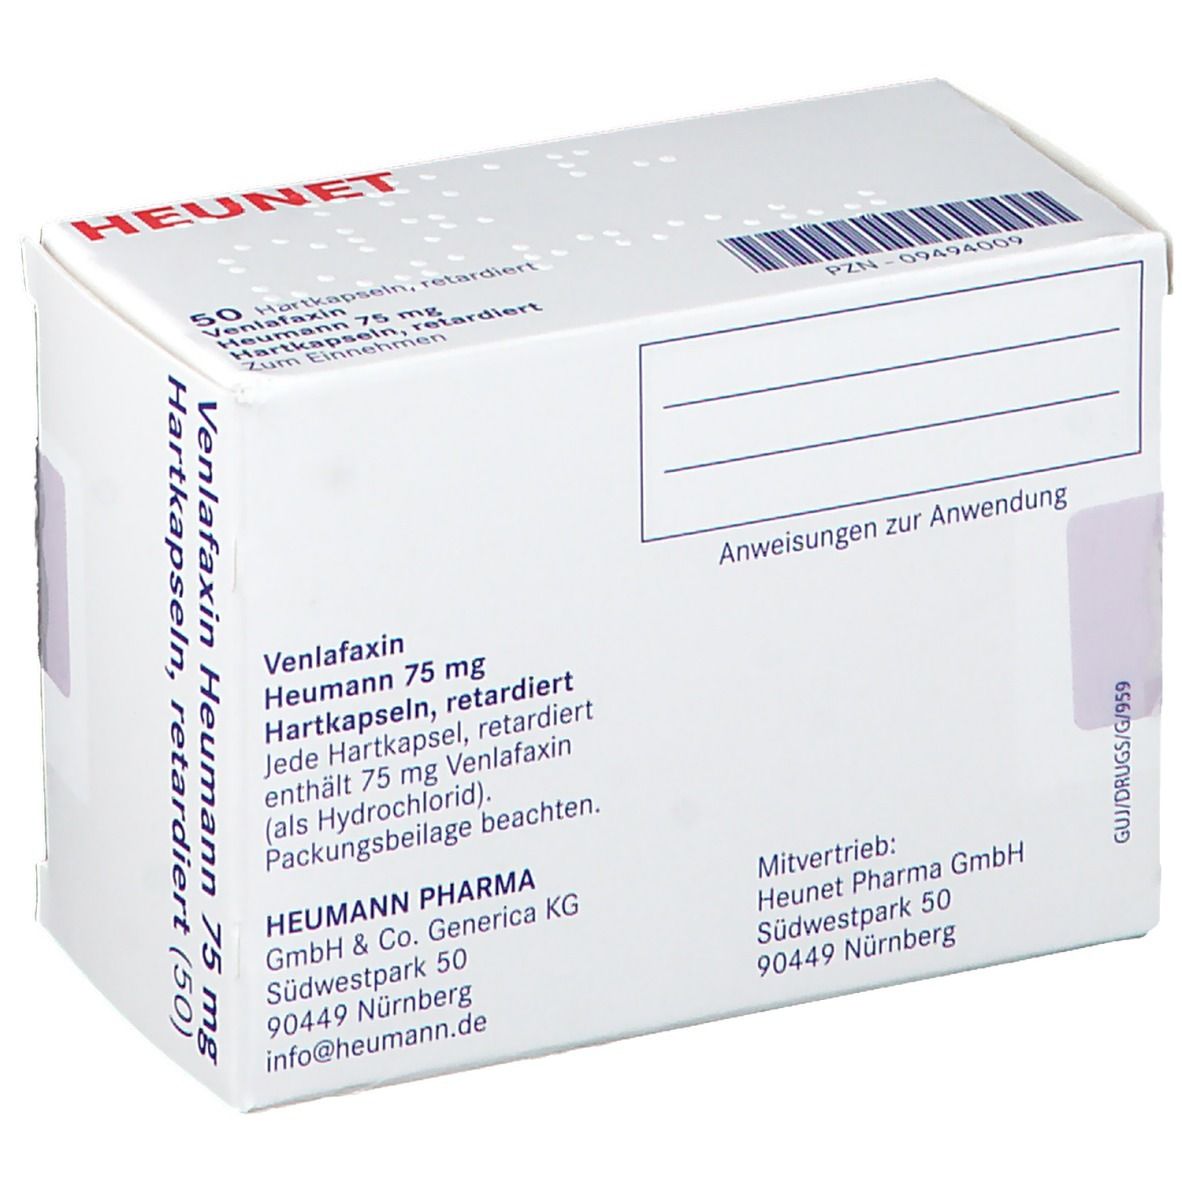 Venlafaxin Heumann 75 mg